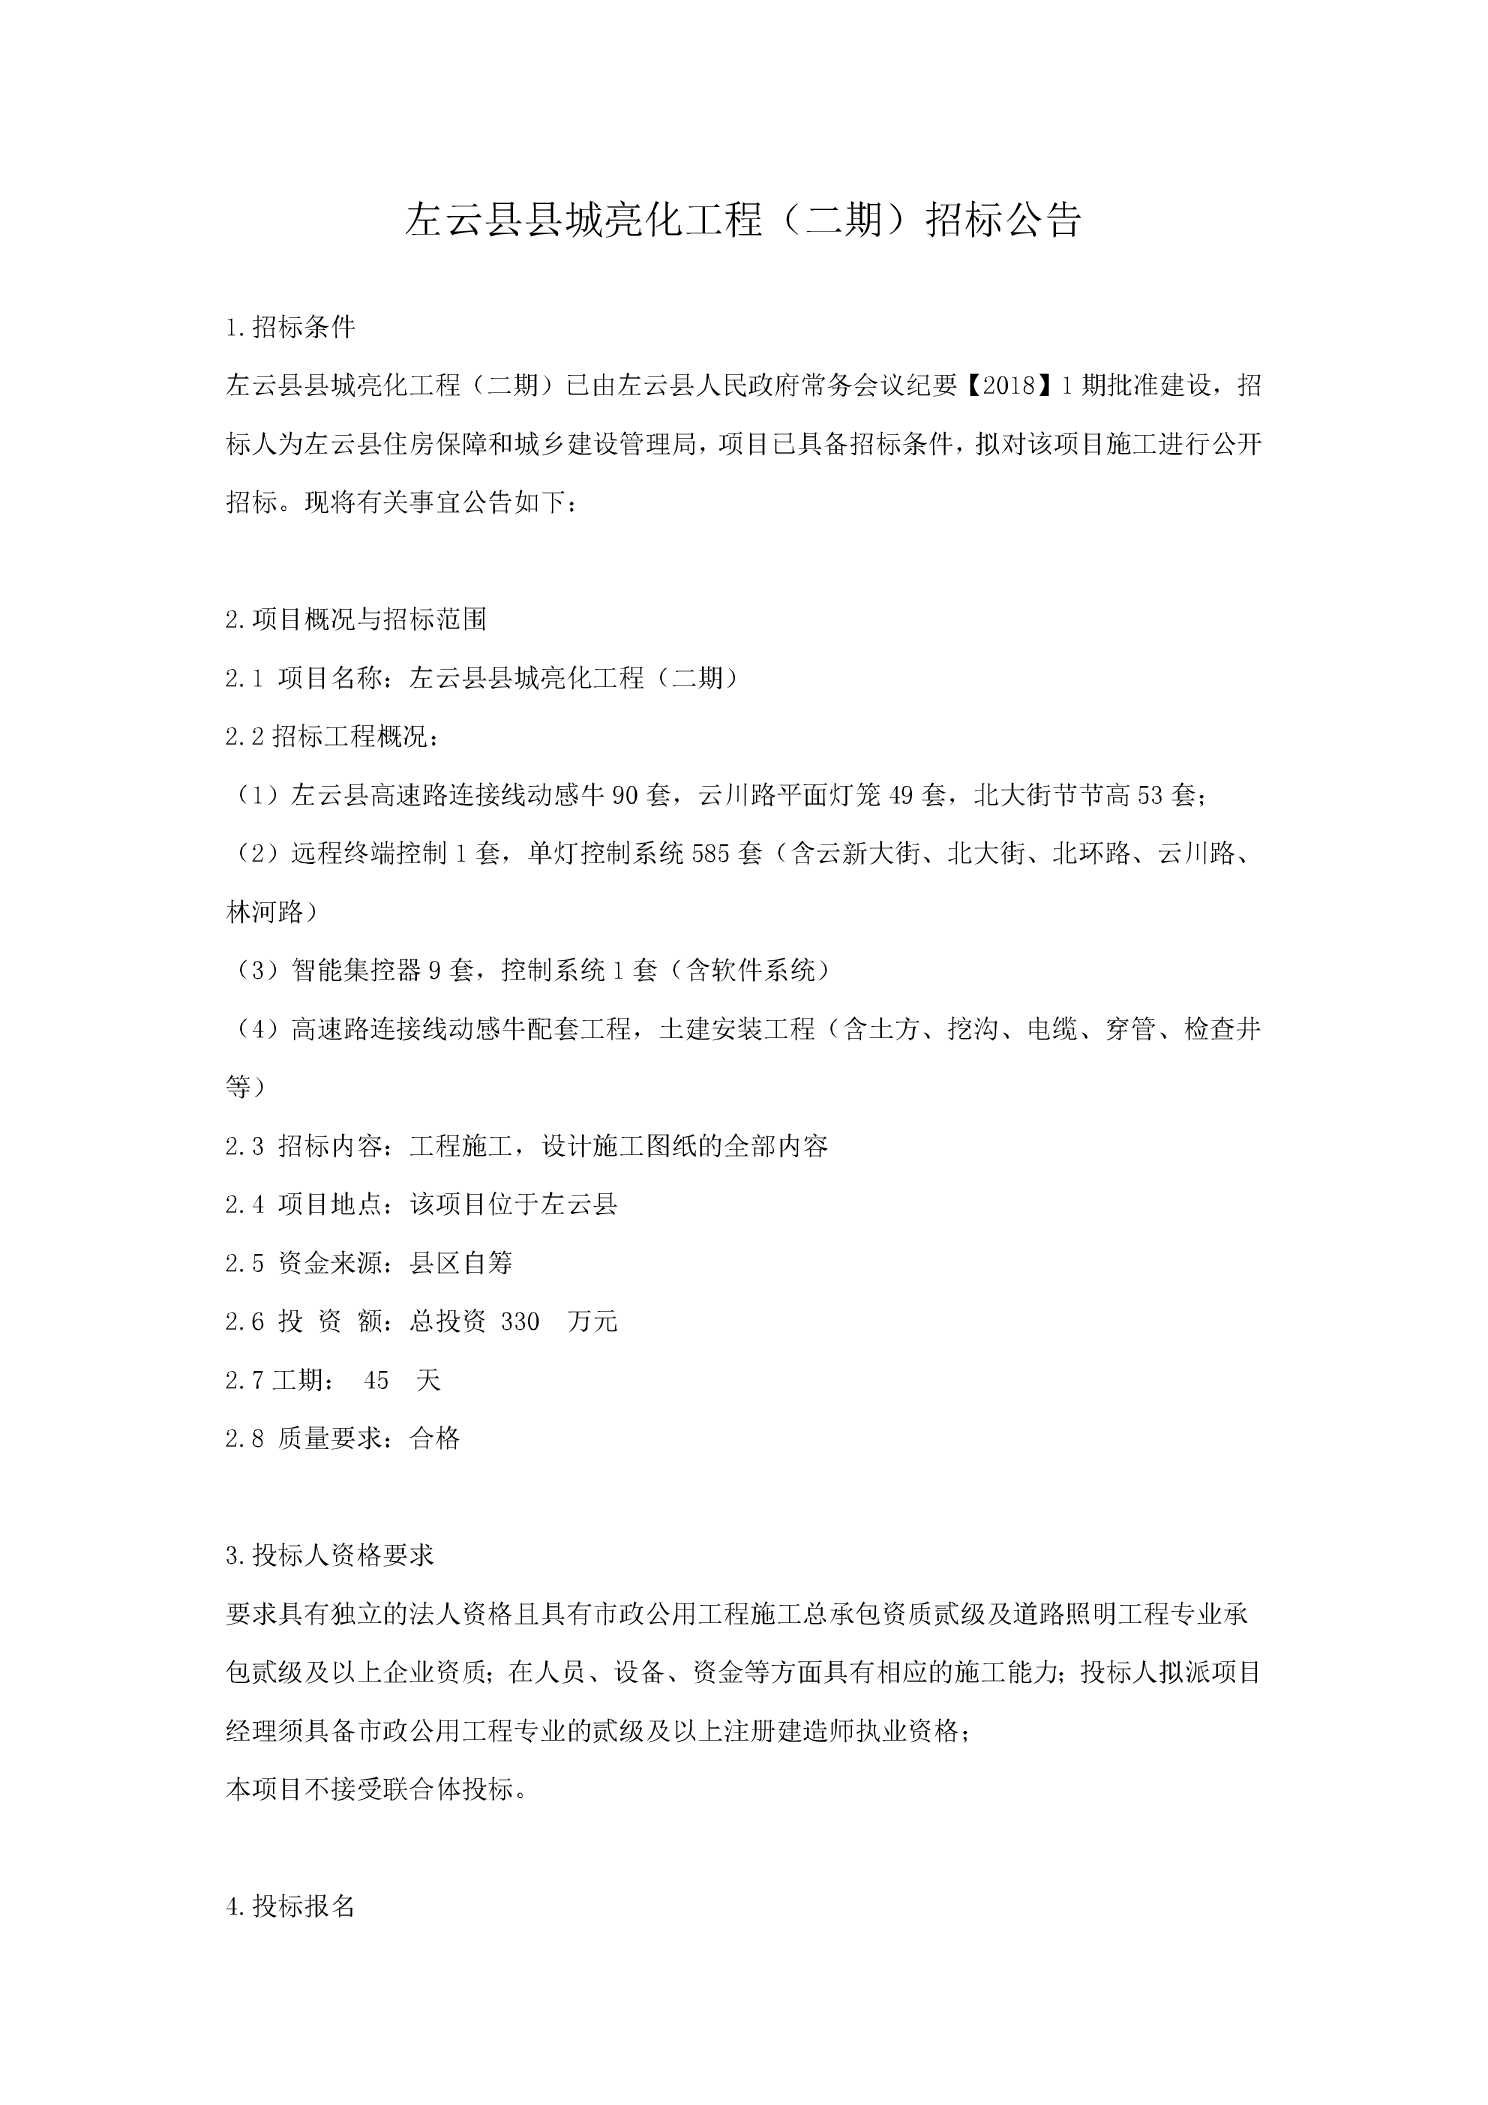 左云县县城亮化工程(二期)招标公告图片